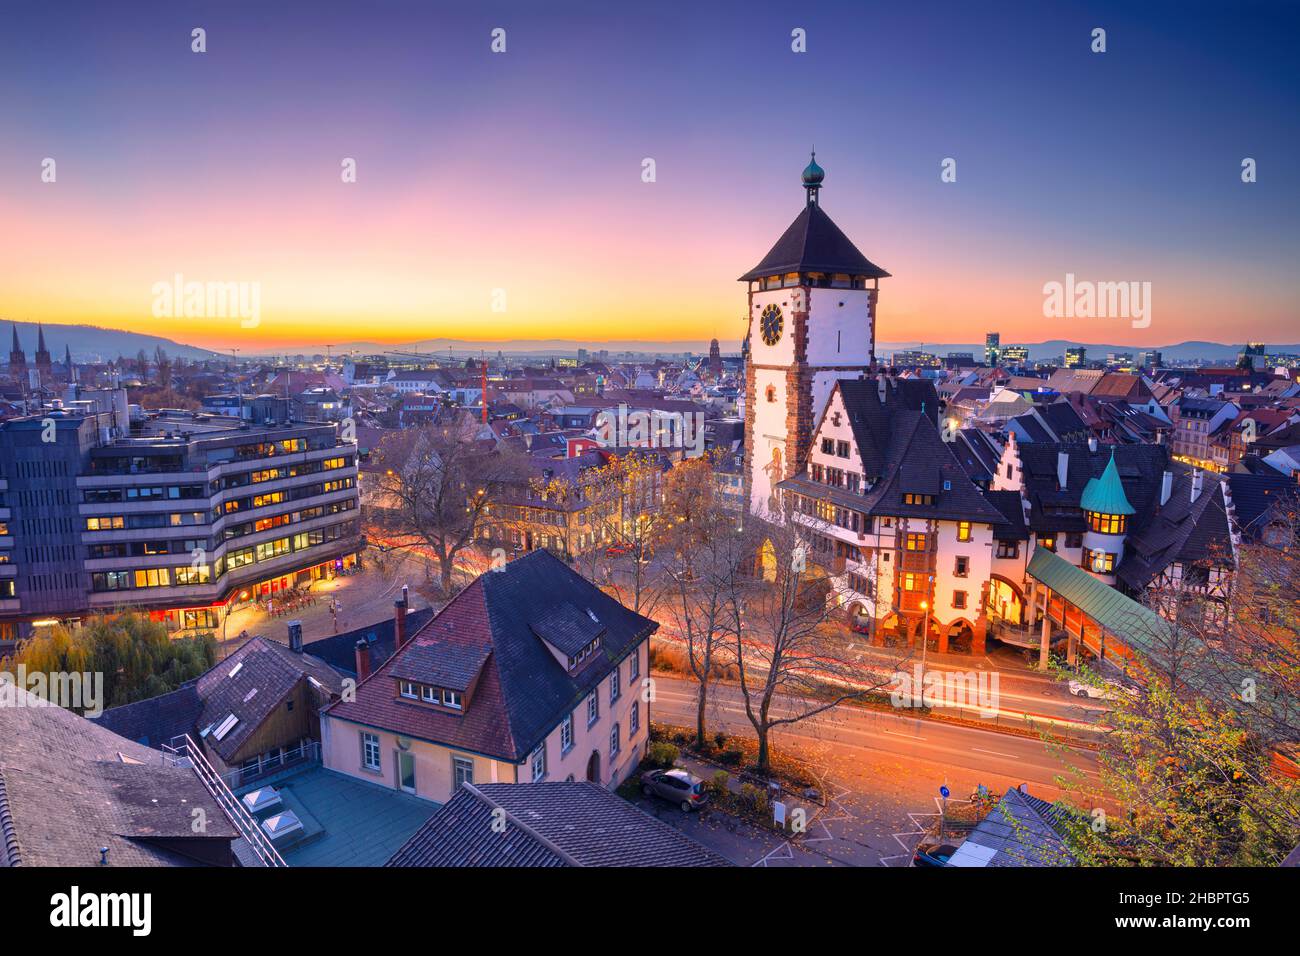 Friburgo in Breisgau, Germania. Immagine aerea del paesaggio urbano di Friburgo in Breisgau, Germania con la porta sveva al tramonto d'autunno. Foto Stock